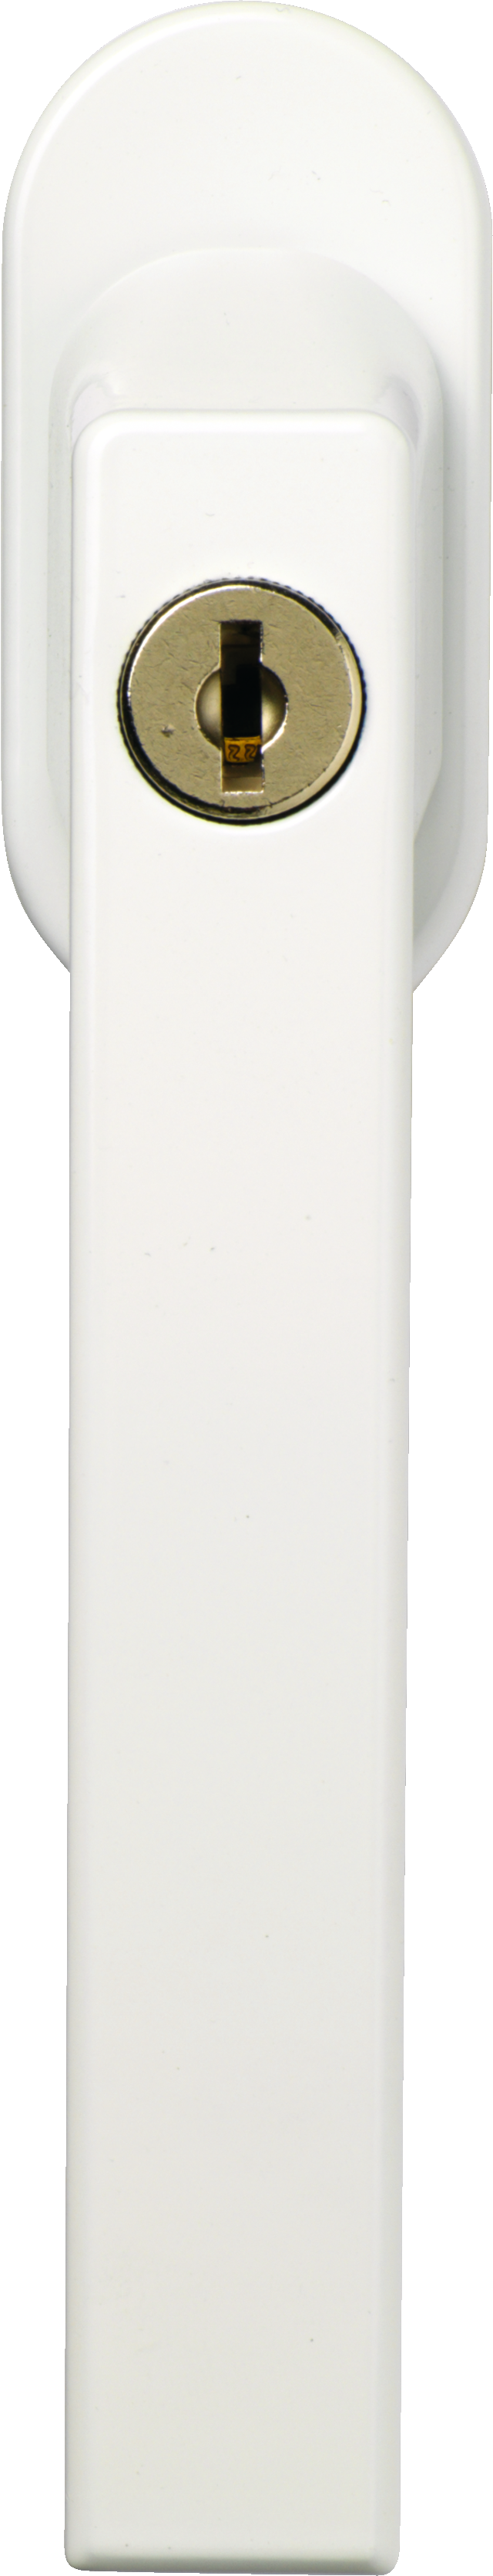 Zárható ablakkkilics FG210 fehér ferde elülső nézet